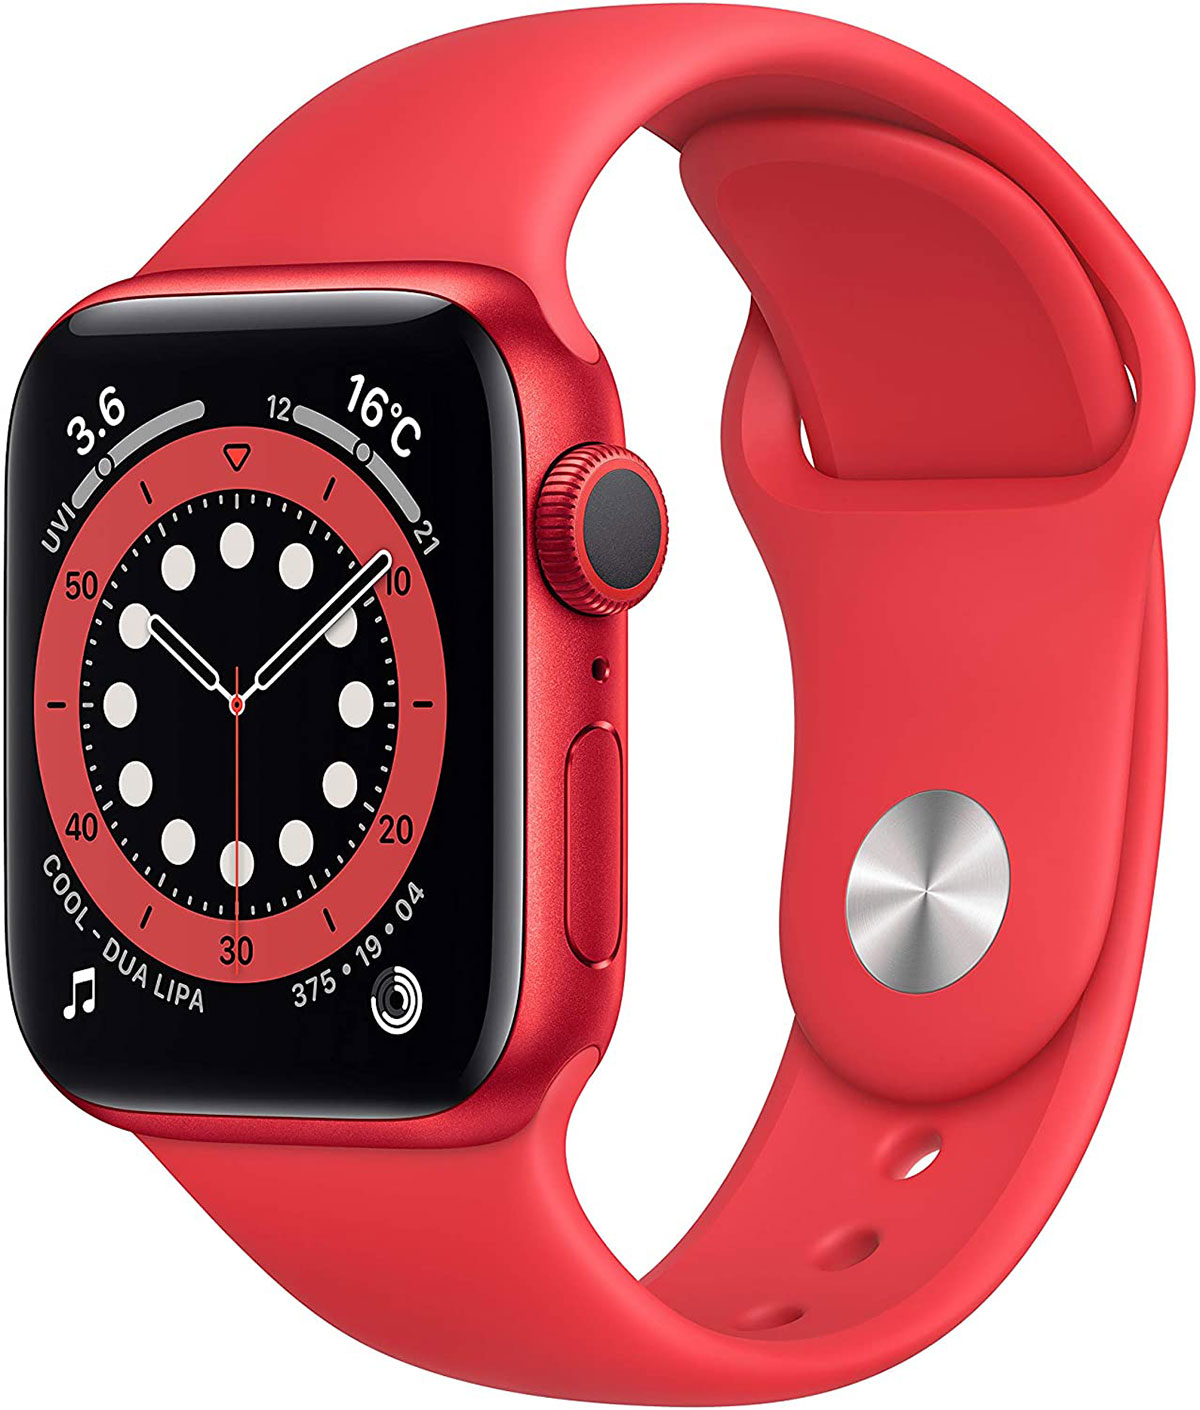 Amazonタイムセール祭り】Apple Watchシリーズがお買い得 他社スマート